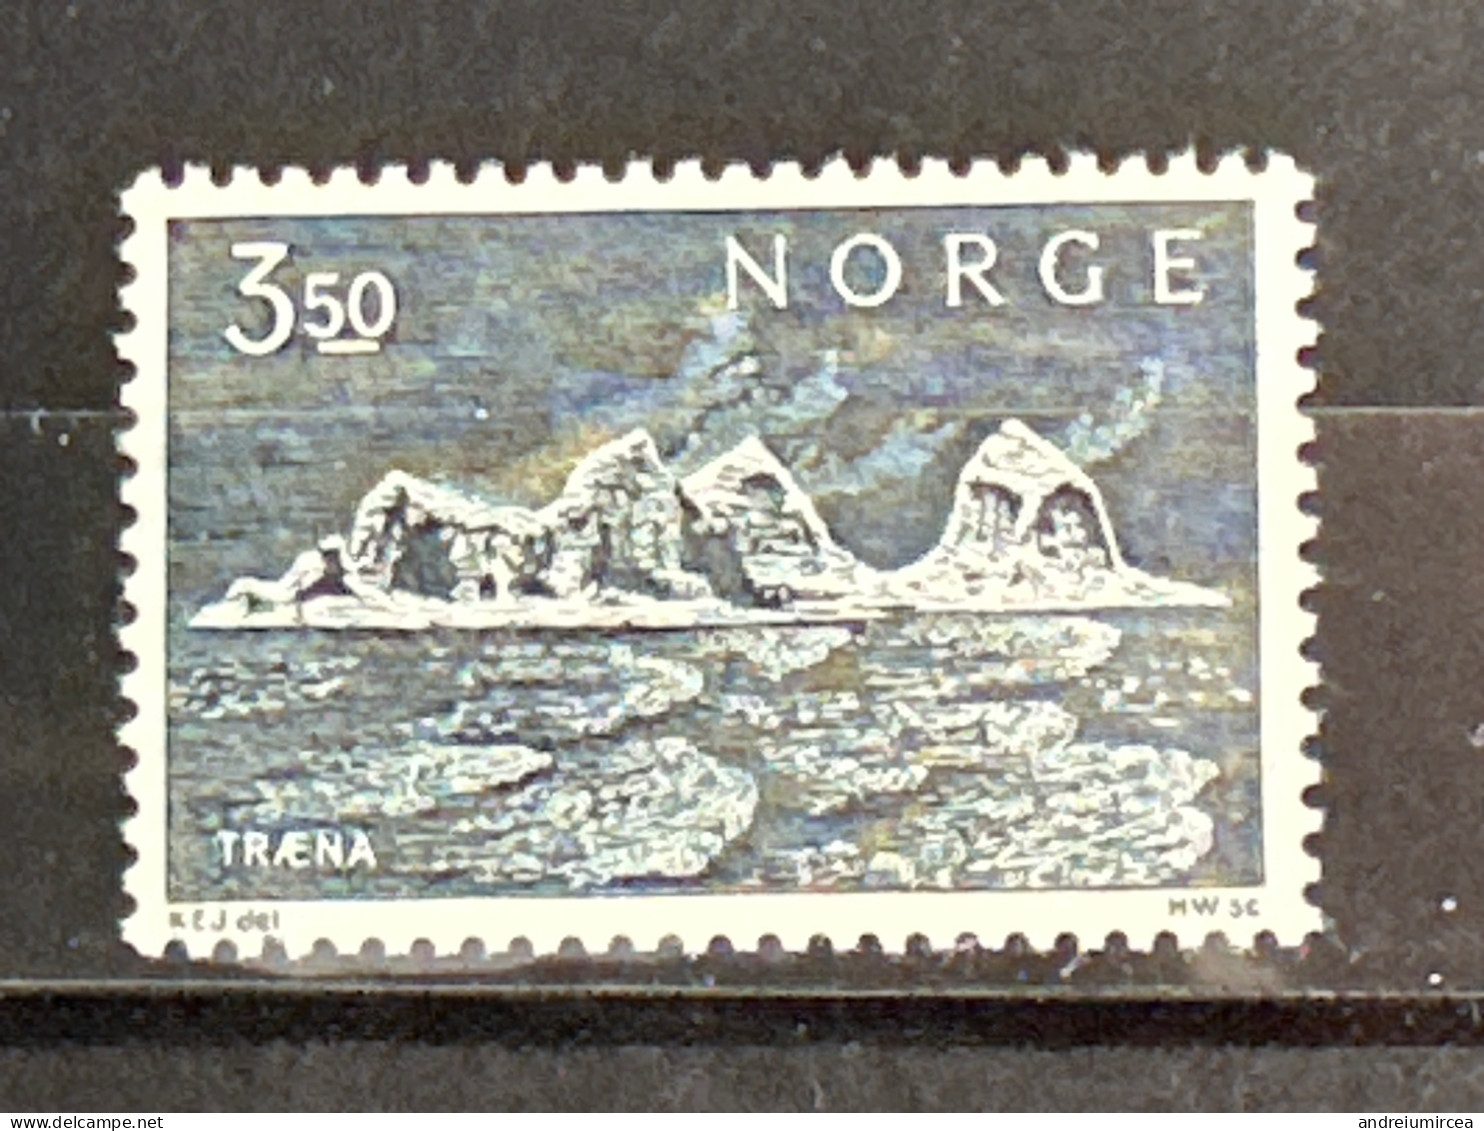 Norvege MNH - Neufs